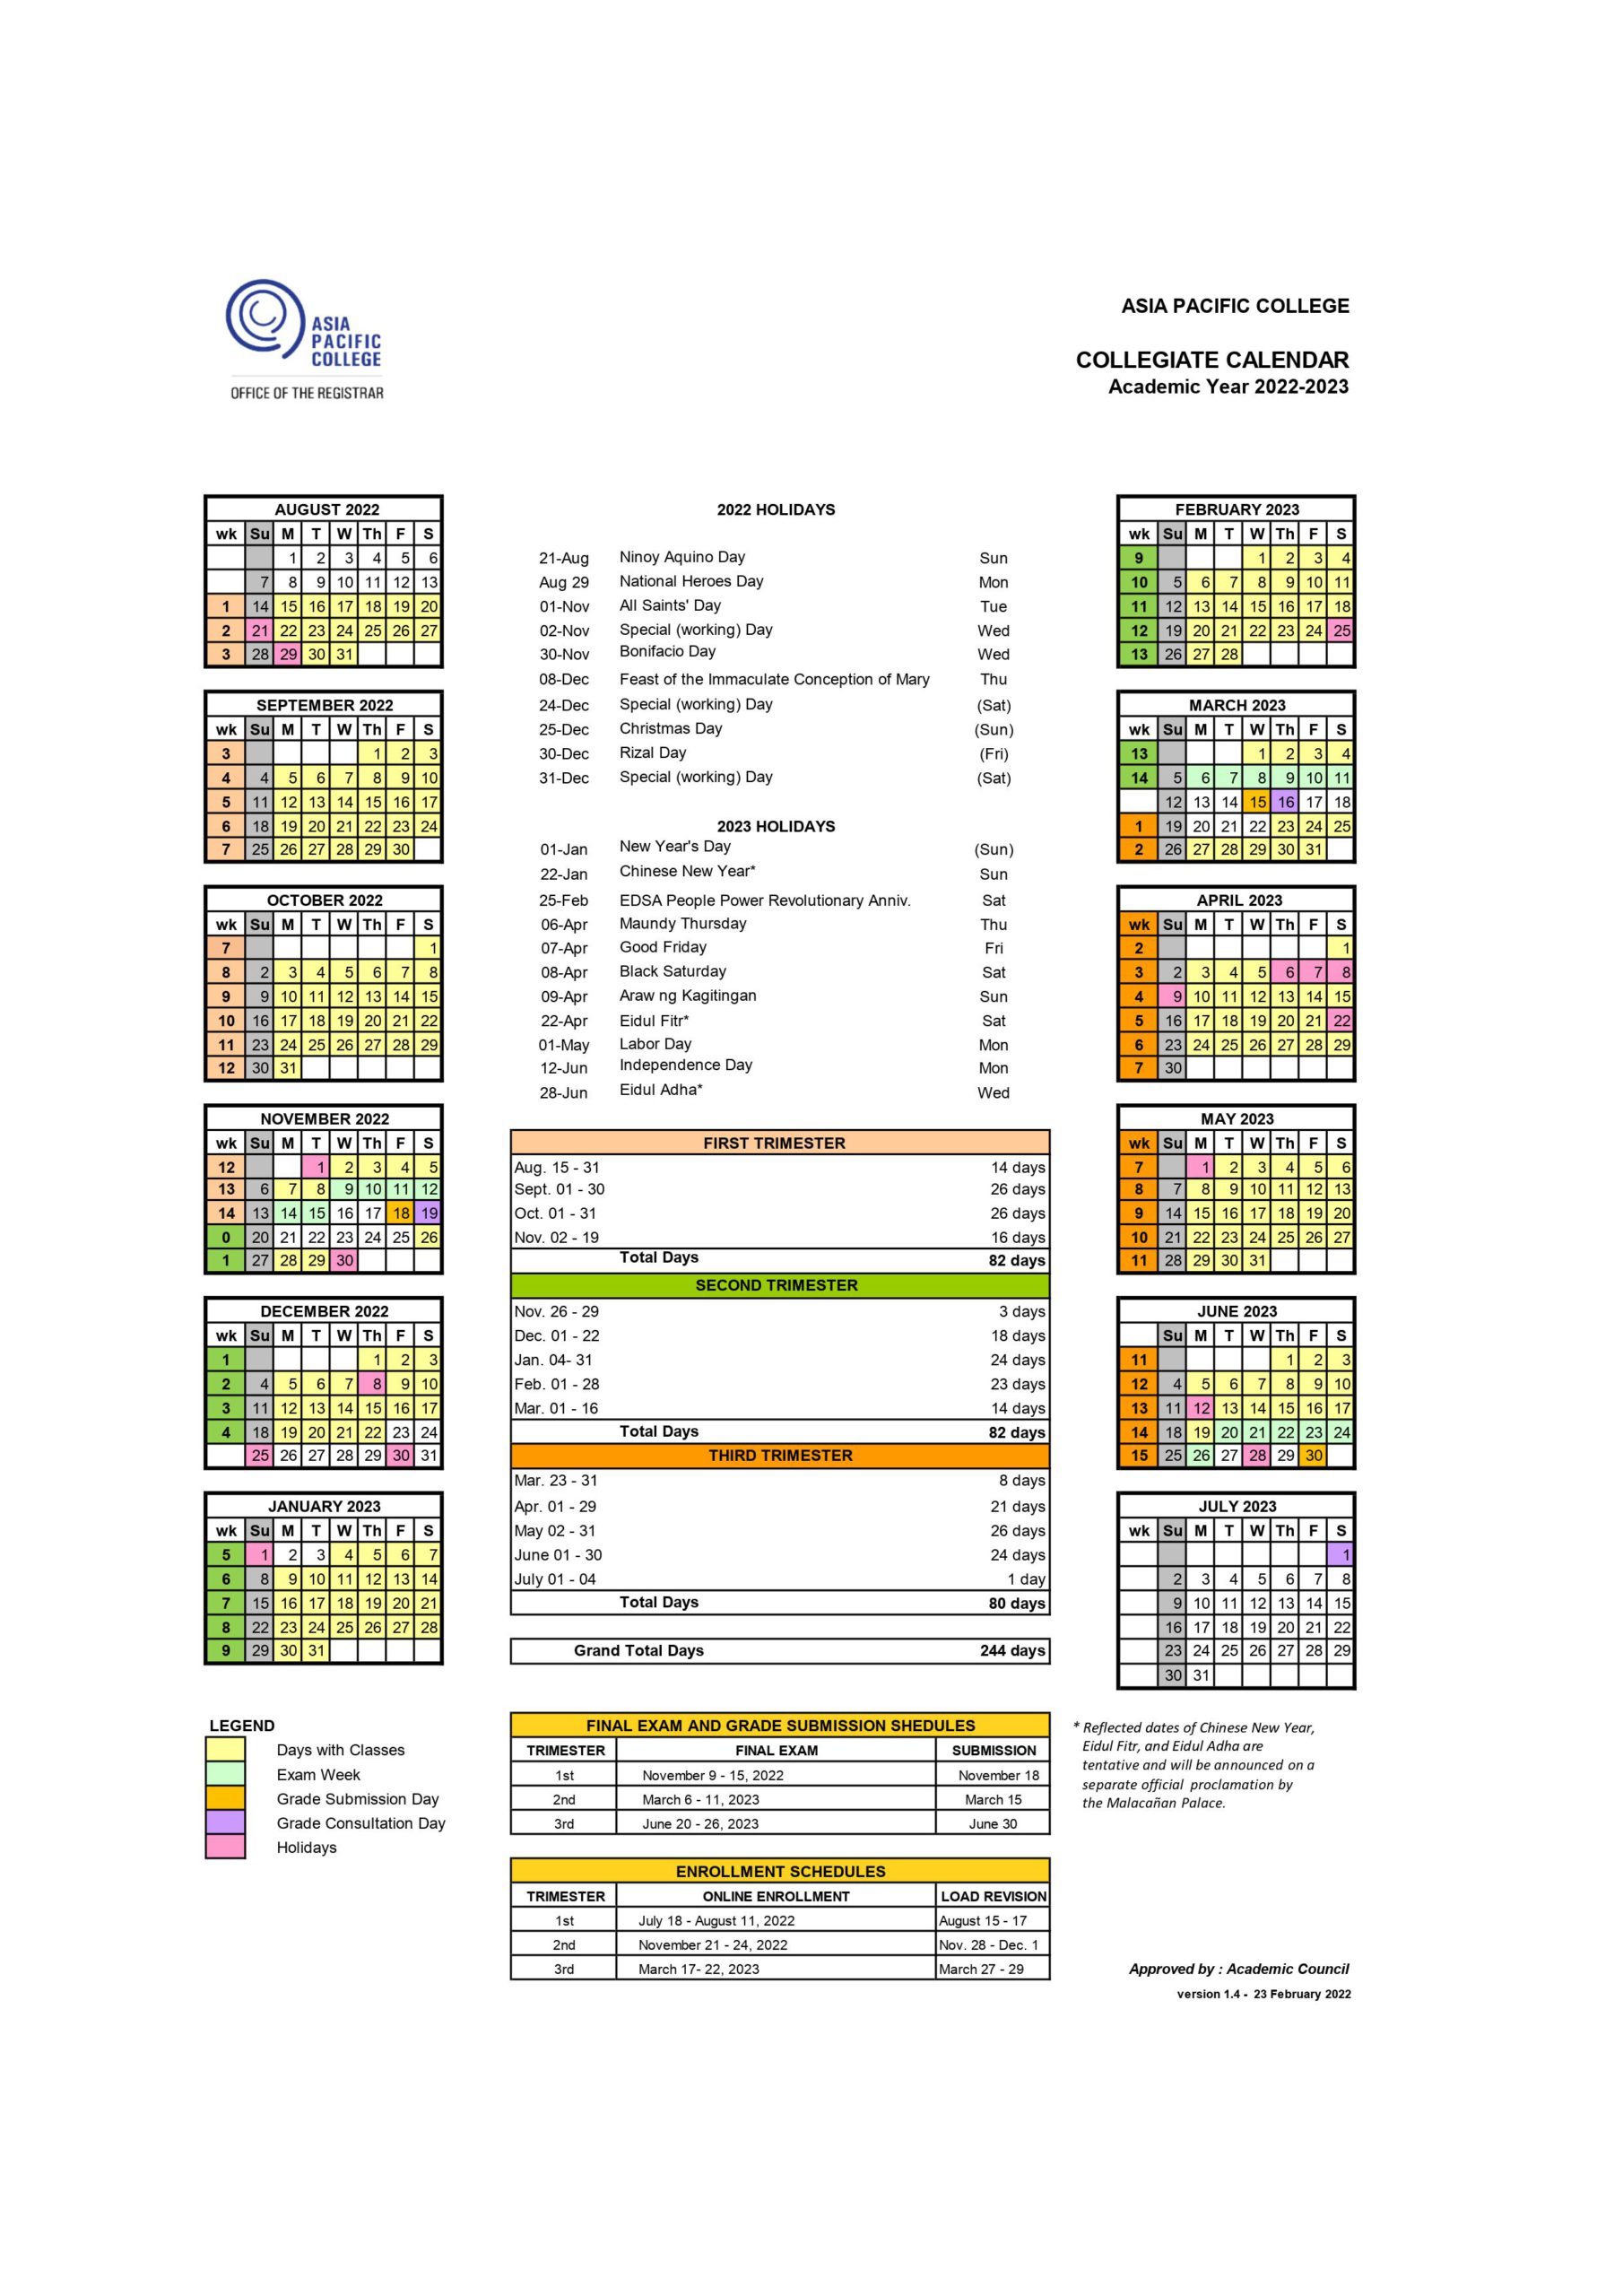 APC Collegiate Calendar AY 2022-2023 v1.4